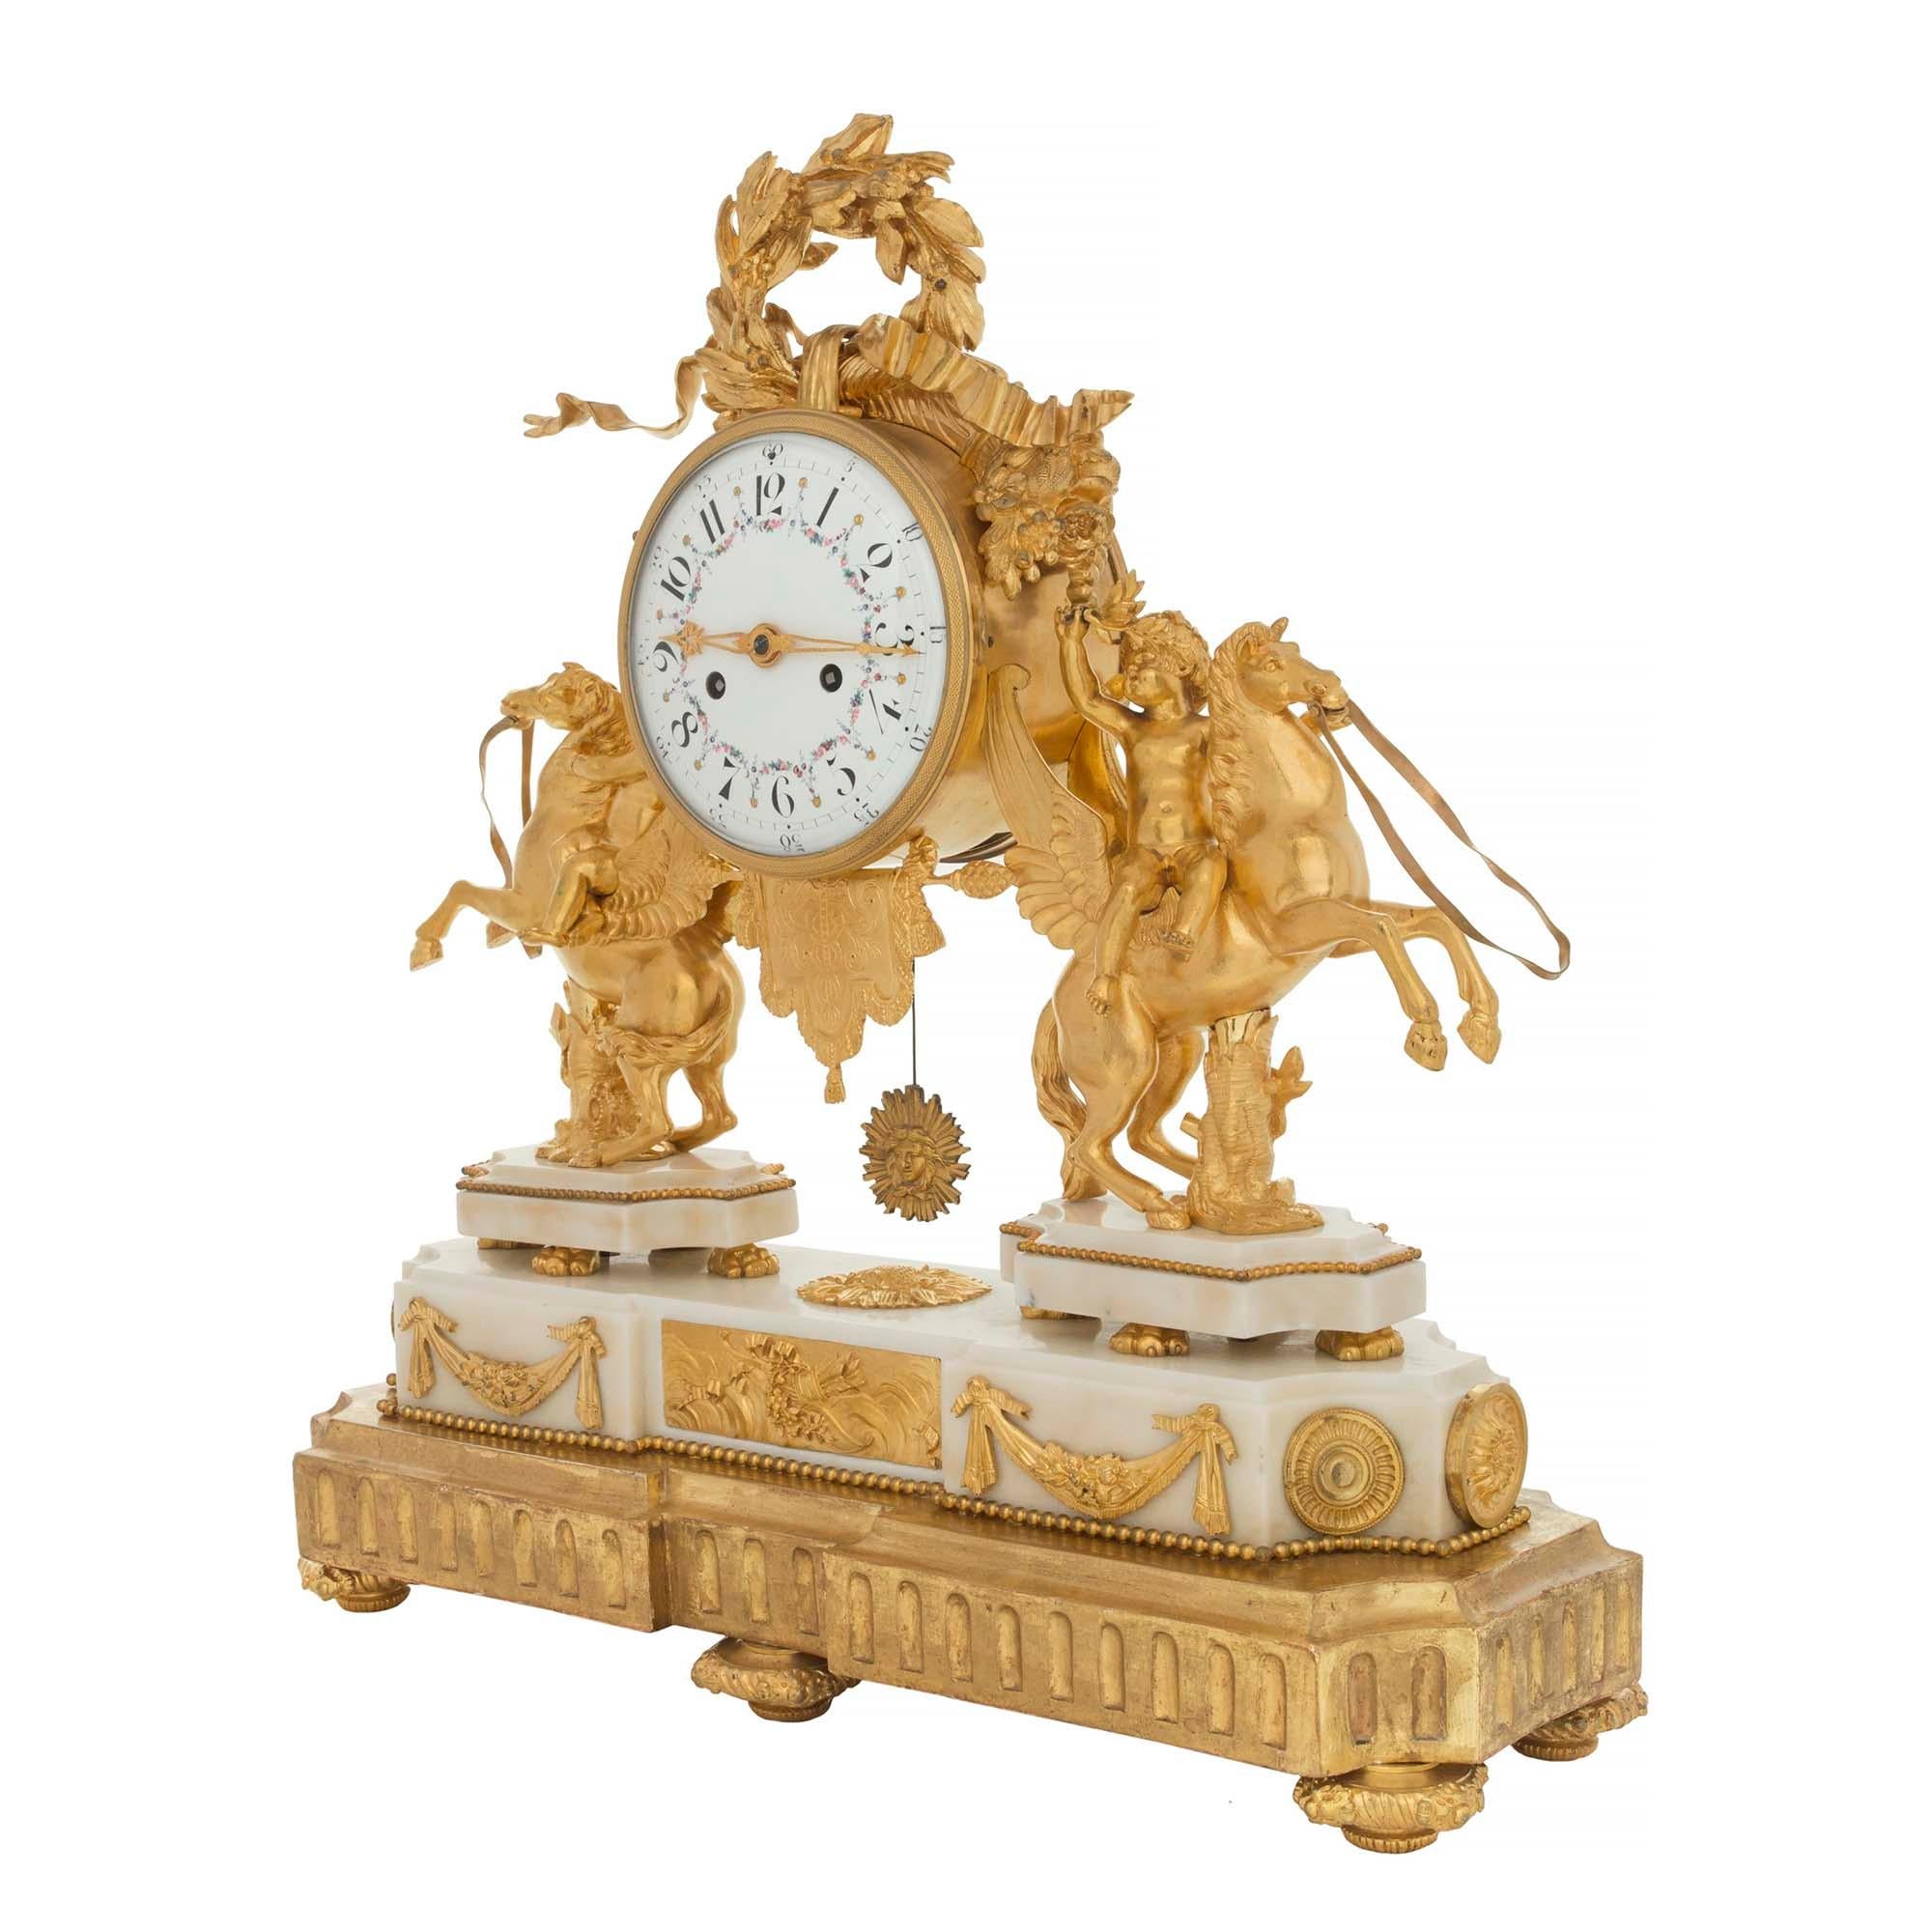 Eine atemberaubende französische Uhr aus dem frühen 19. Jahrhundert aus Louis XVI-St. Ormolu, weißem Carrara-Marmor und Vergoldung. Die Uhr wird von einem feinen vergoldeten Sockel getragen, der die dekorative Form der Uhr nachahmt. Der Sockel der